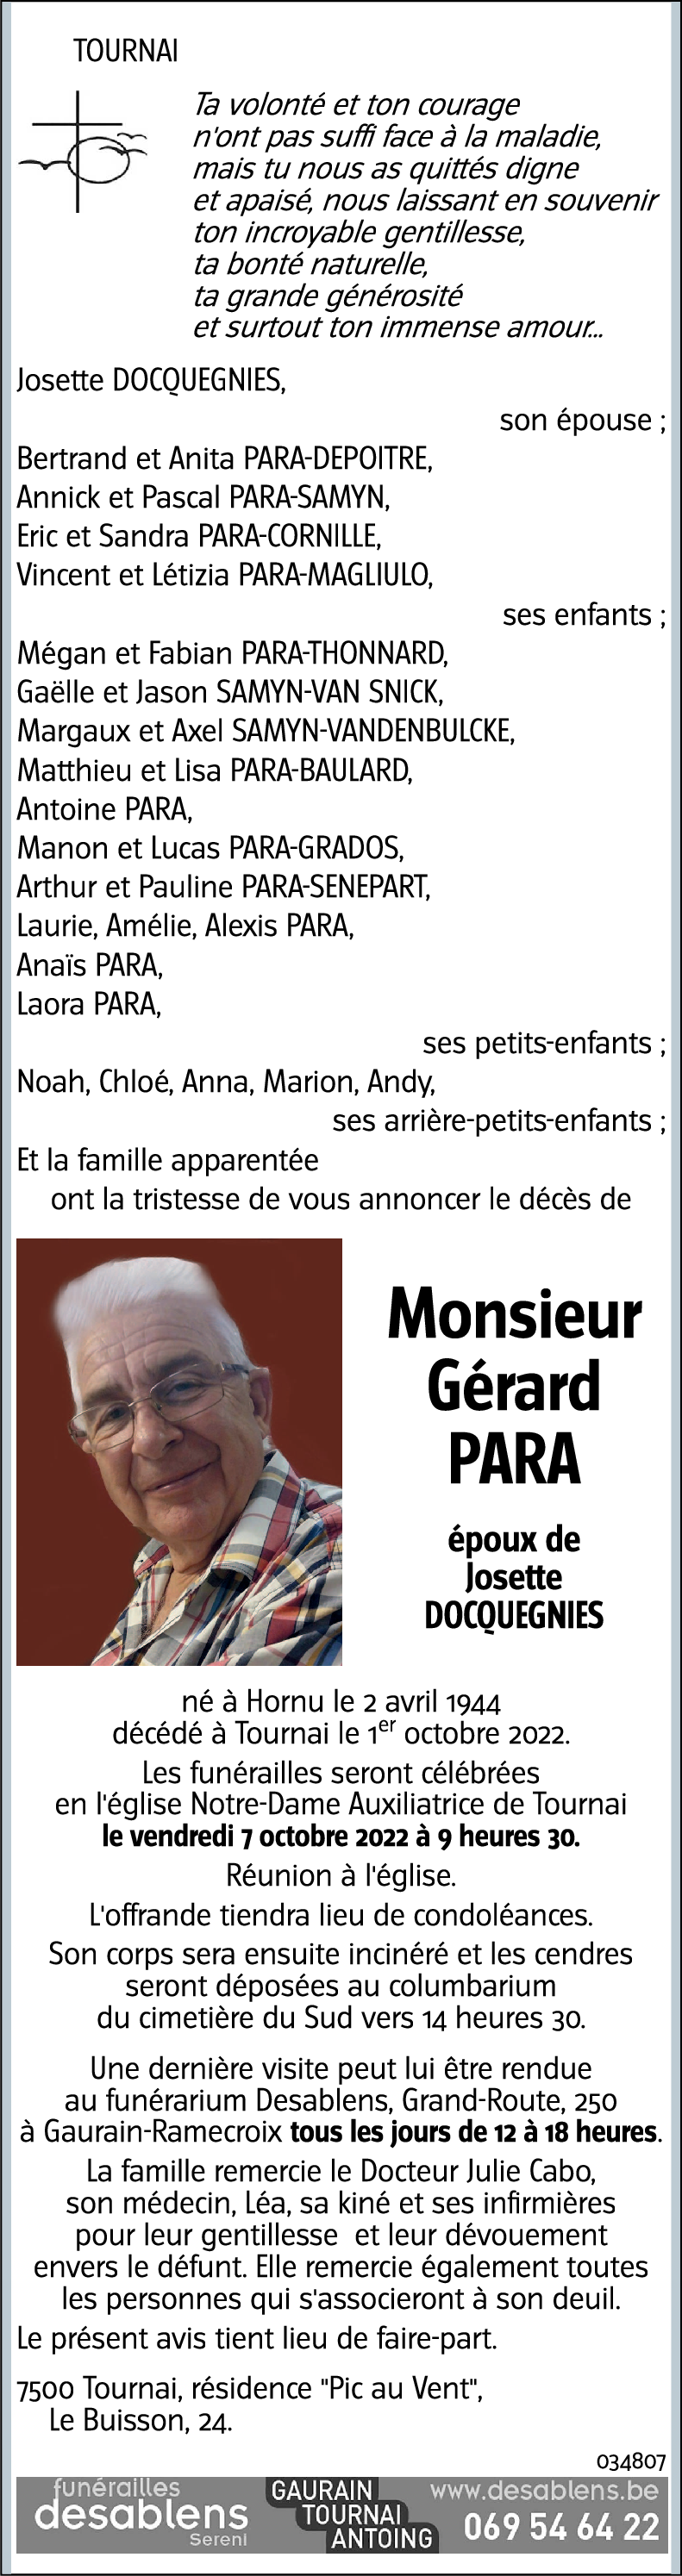 Gérard PARA